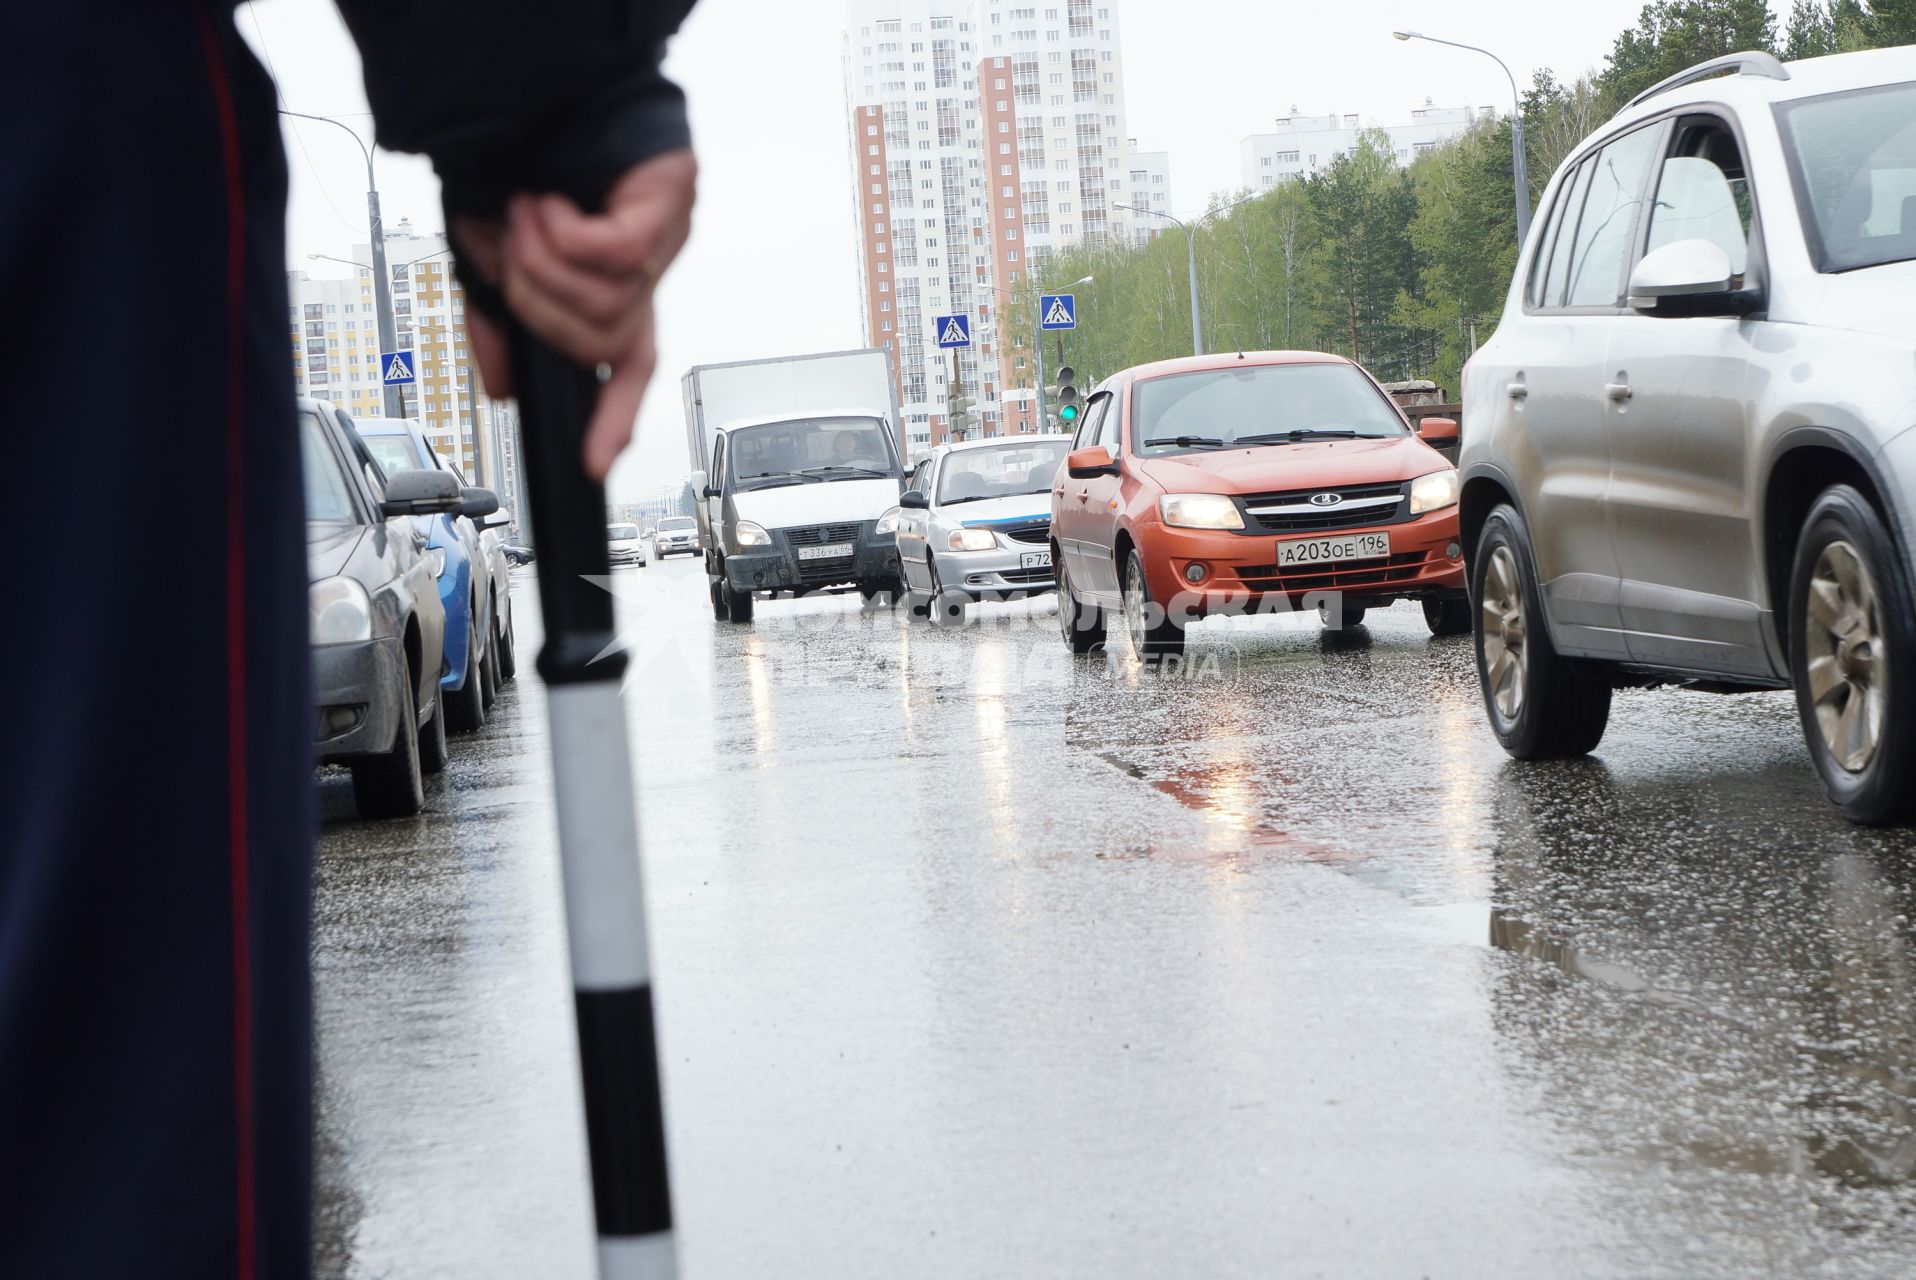 Полицейский  ГИБДД с жезлом у дороги во время рейда. Екатеринбург